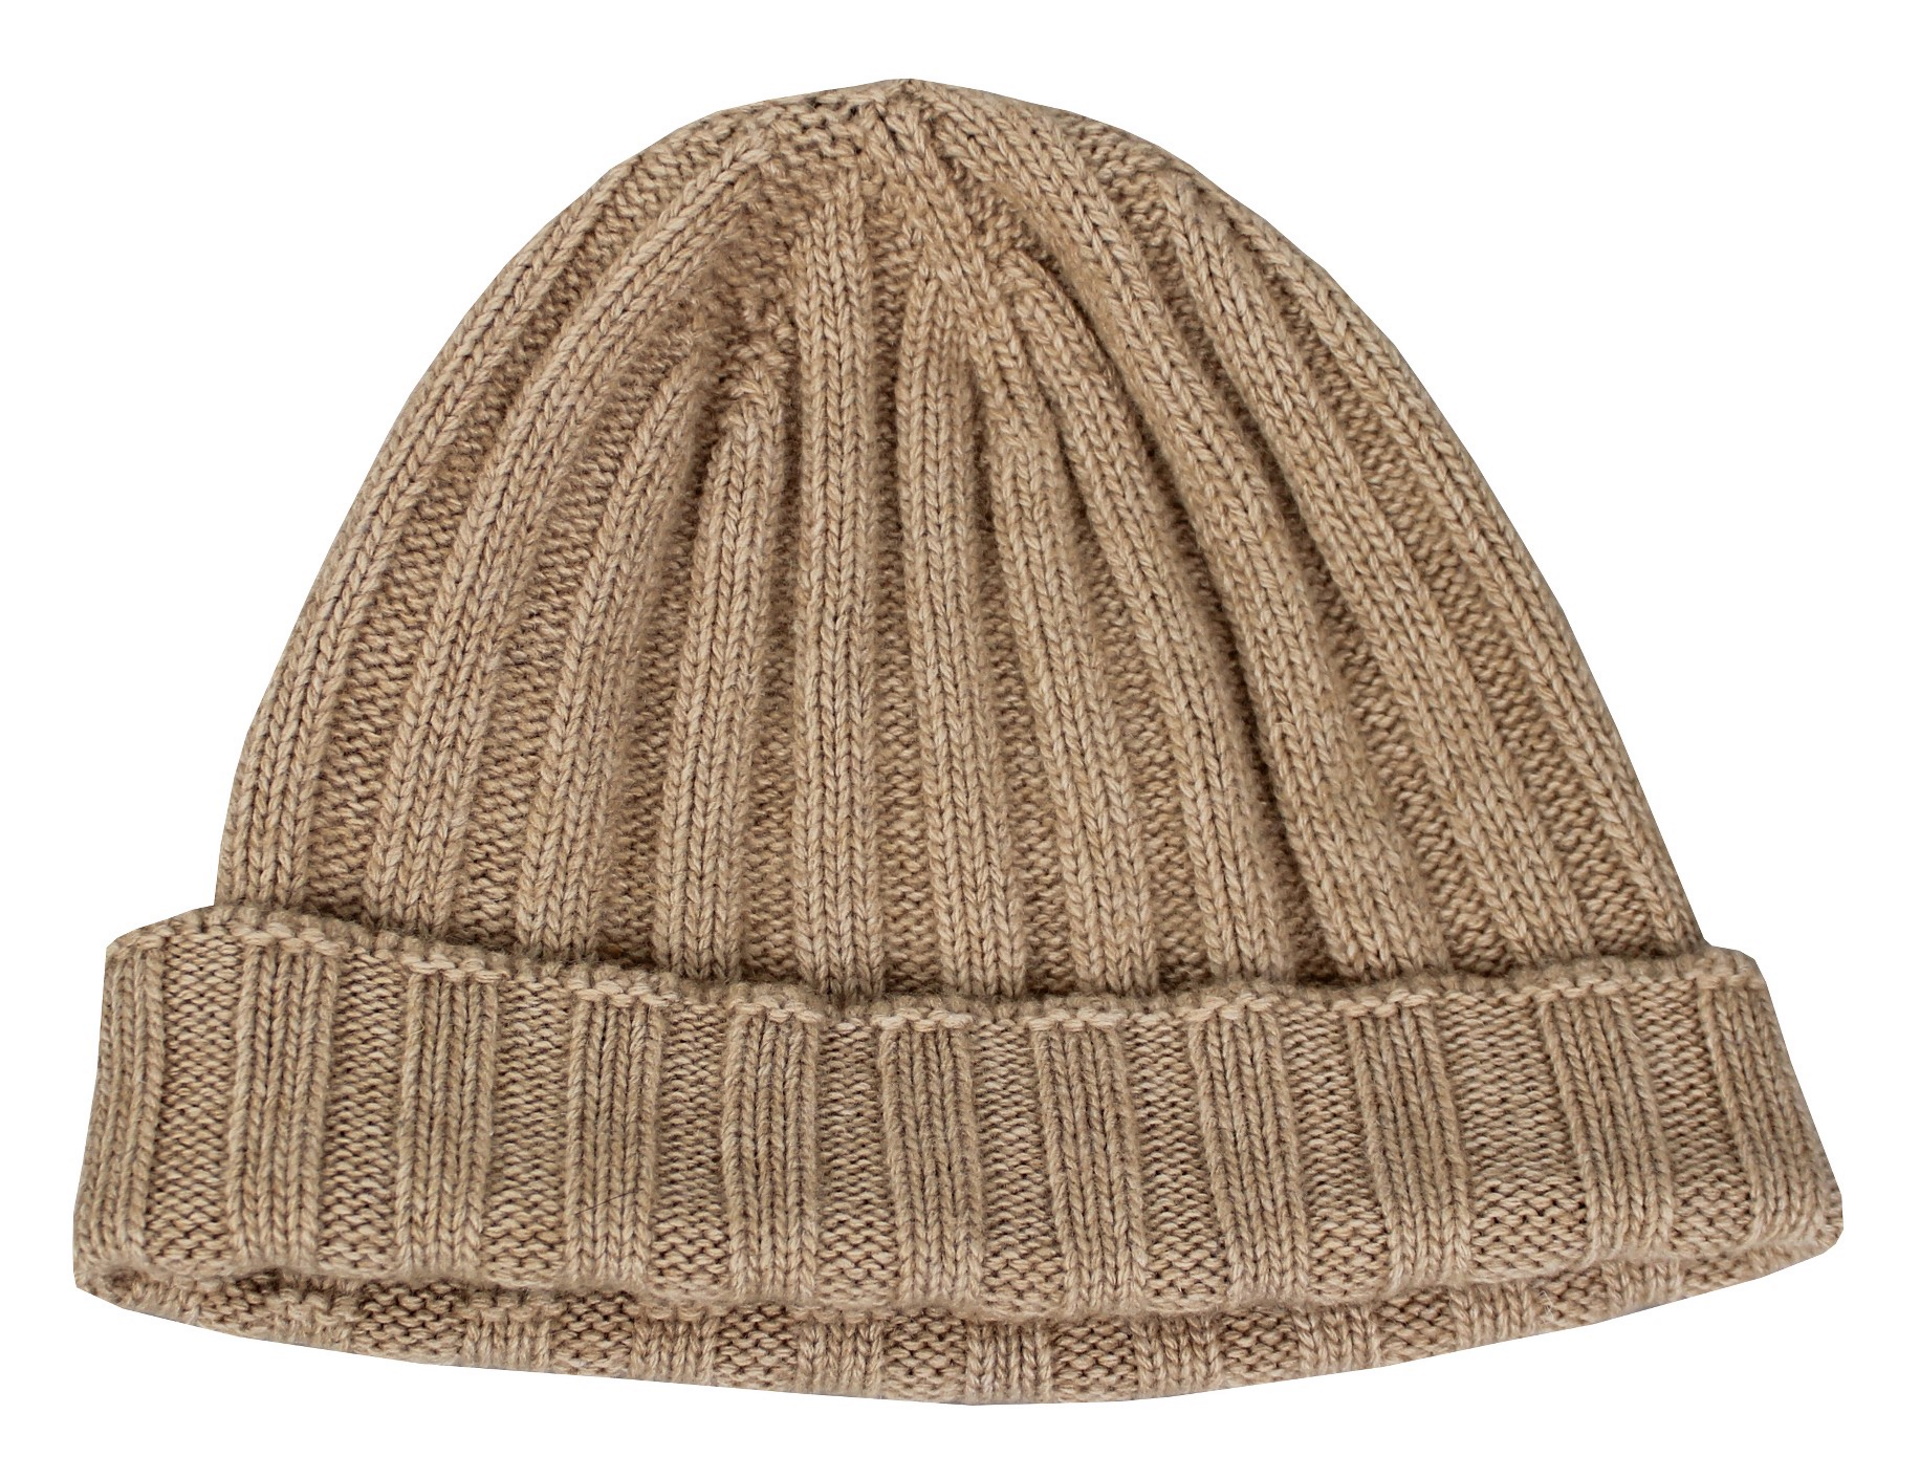 WALLIS NATURALE CAPPELLINO UOMO CASHMERE E LANA 2 1stAmerican cappellino lana e cashmere Made in Italy da uomo - caldo berretto invernale a coste larghe